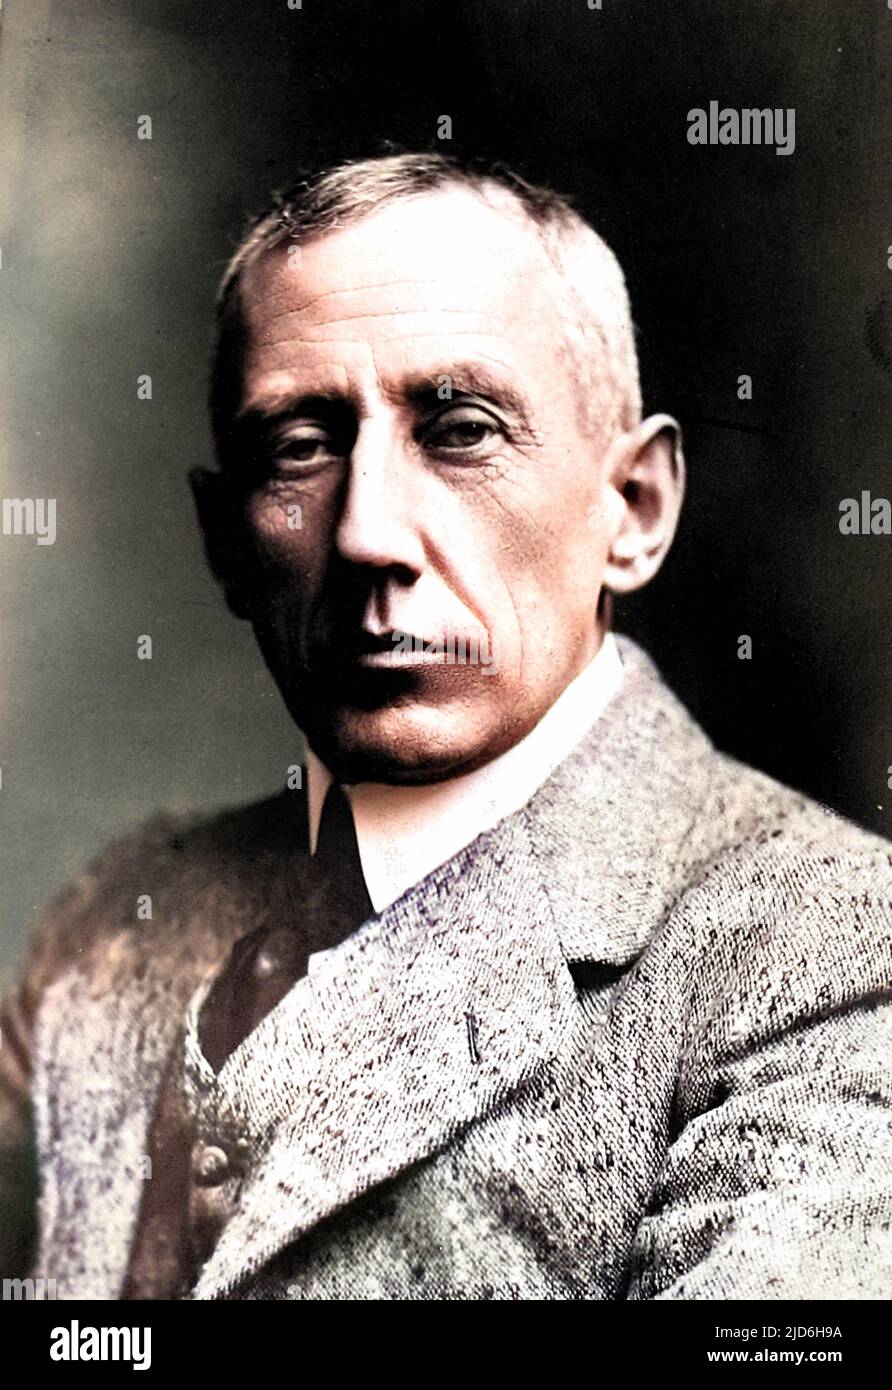 Roald Engelbreth Gravning Amundsen (1872 - 1928), norwegischer Forscher, der als erster Mensch die Nordwestpassage durchquerte und den Südpol erreichte. Kolorierte Version von: 10217859 Stockfoto